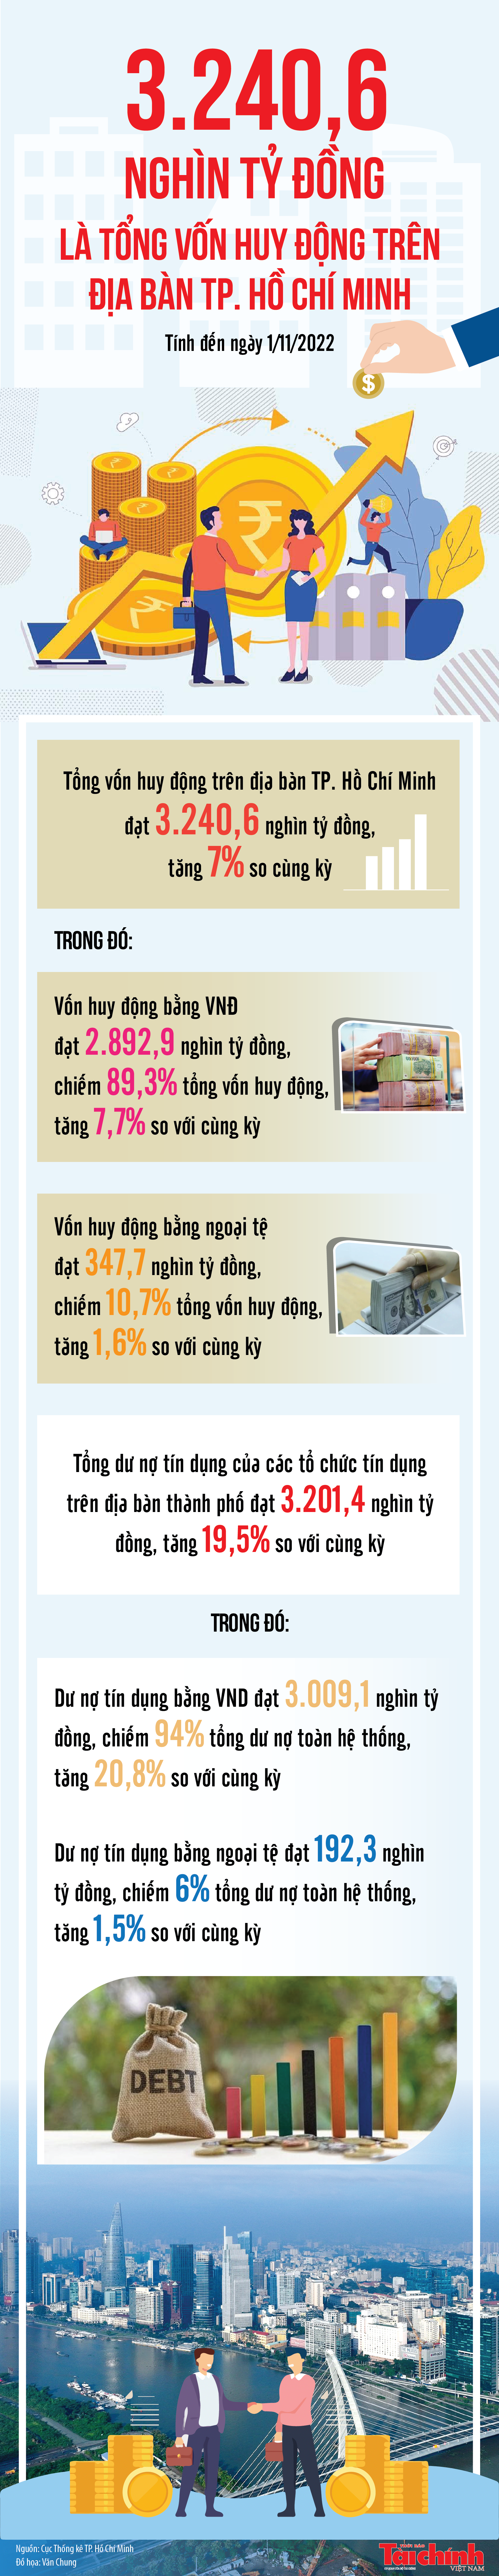 Infographics: Tổng vốn huy động trên địa bàn TP. Hồ Chí Minh đạt 3.240,6 nghìn tỷ đồng